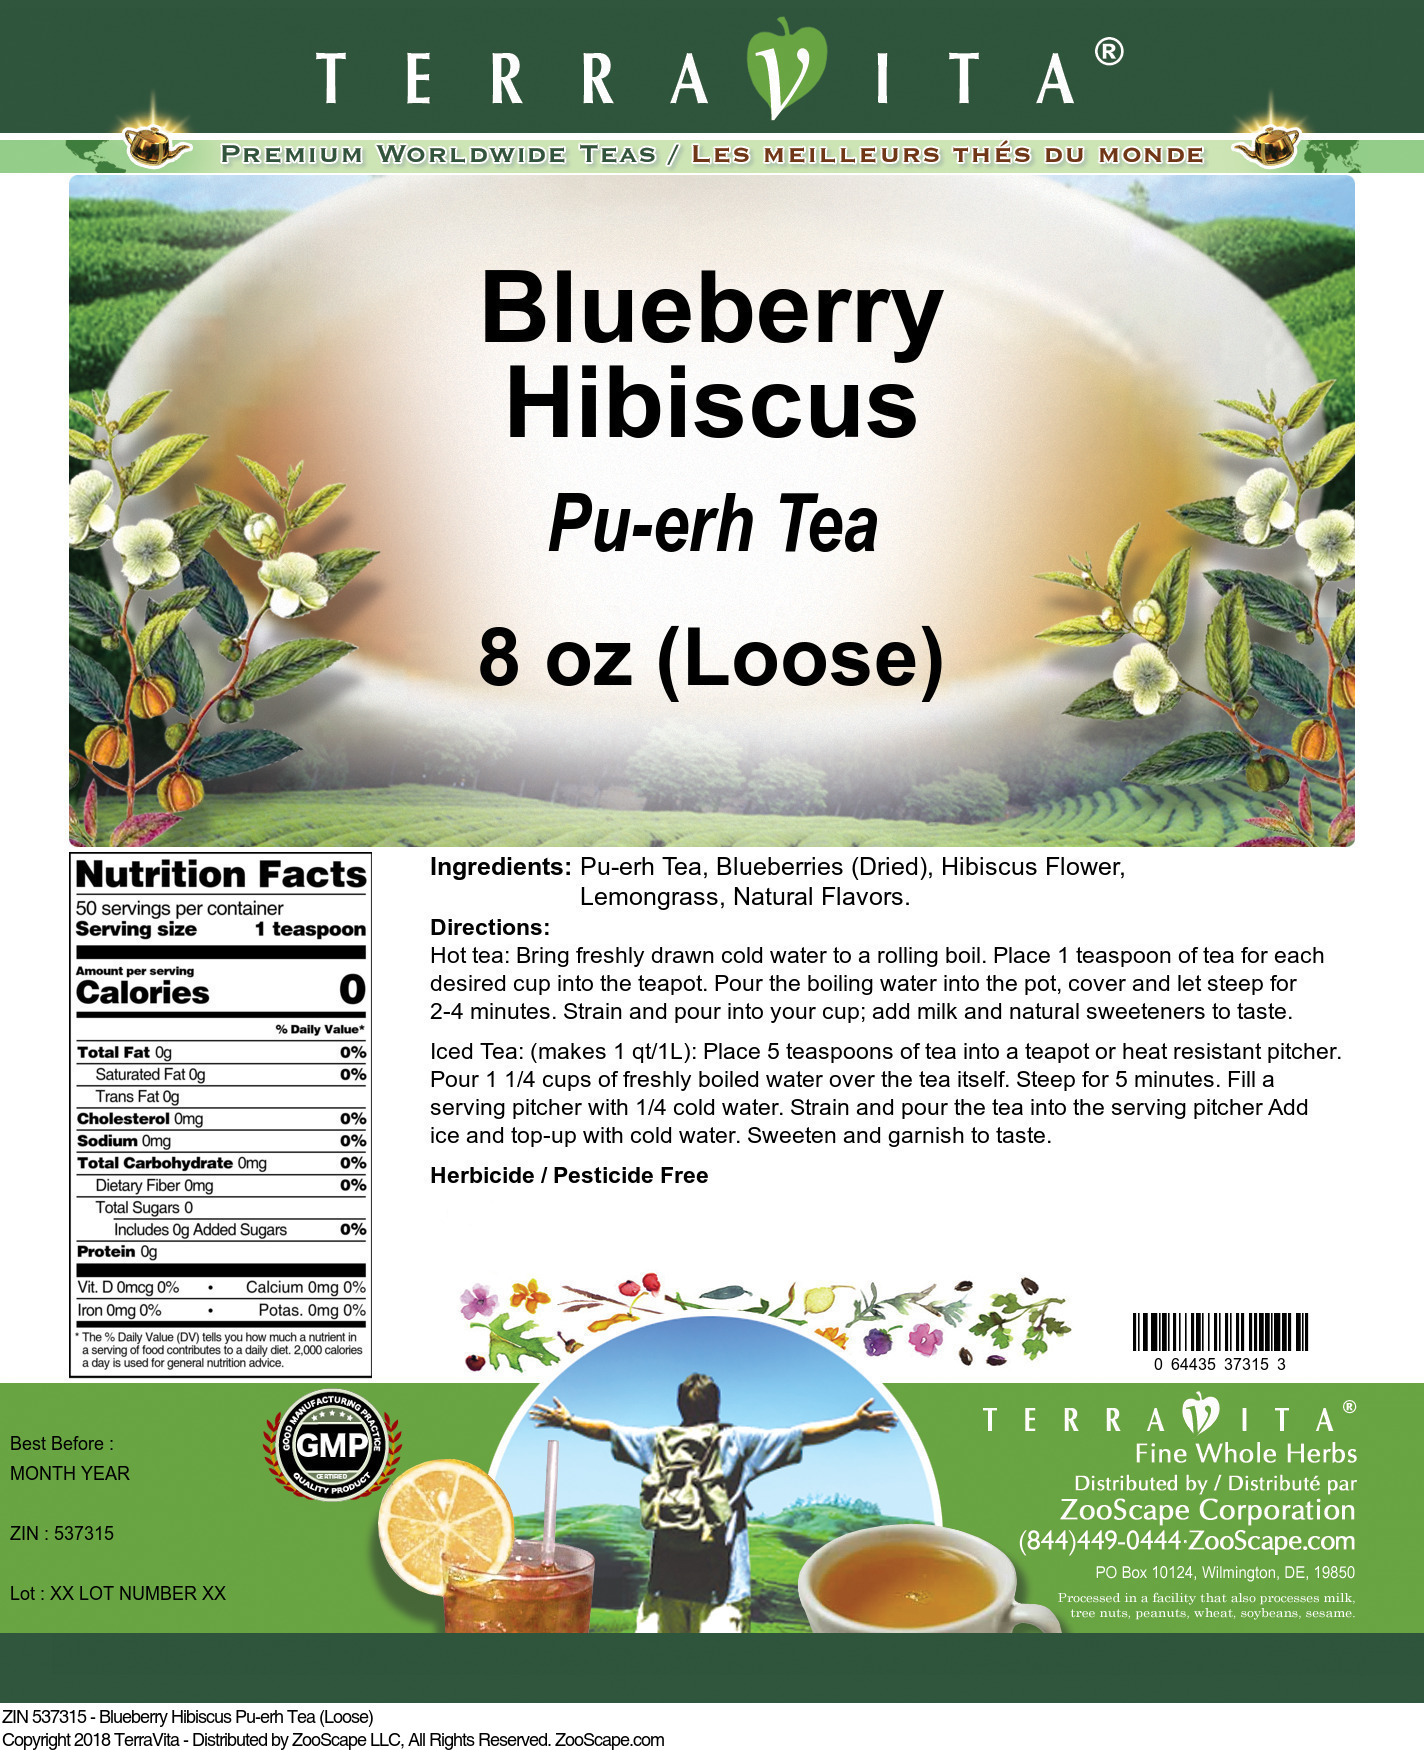 Blueberry Hibiscus Pu-erh Tea (Loose) - Label